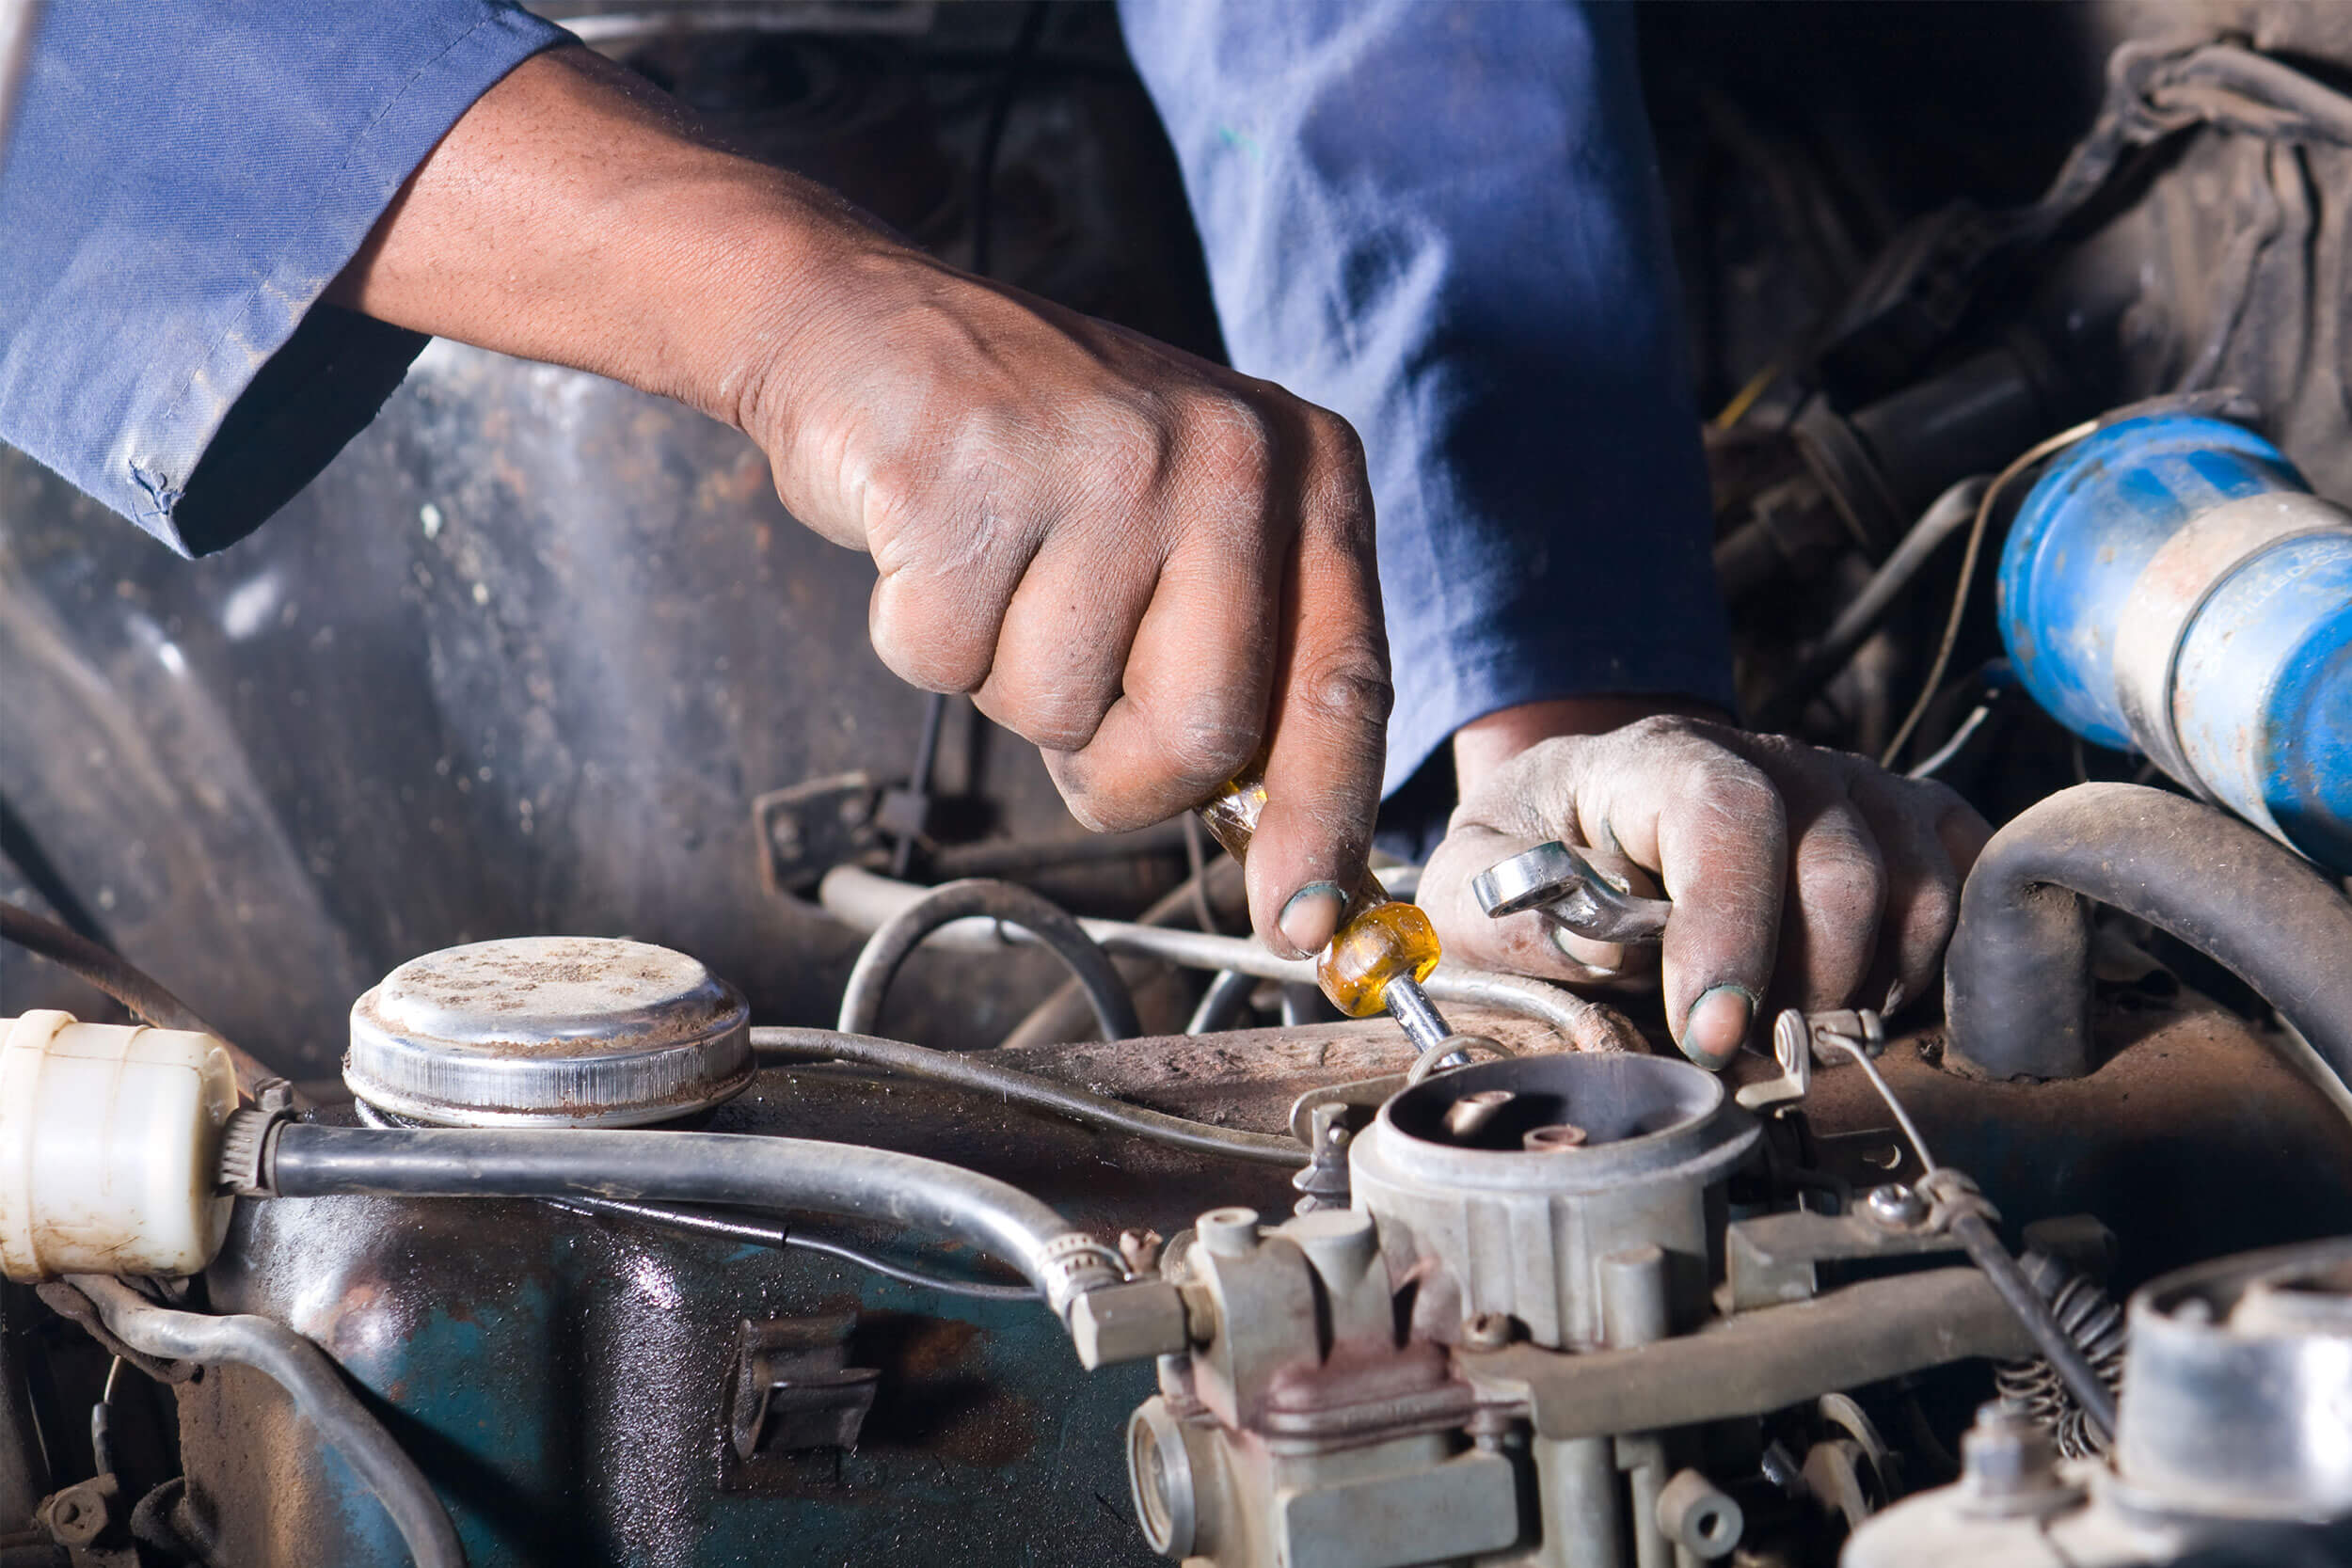 Angel's Transmission & Auto Repair Blog - Orange County - Auto Repair 101